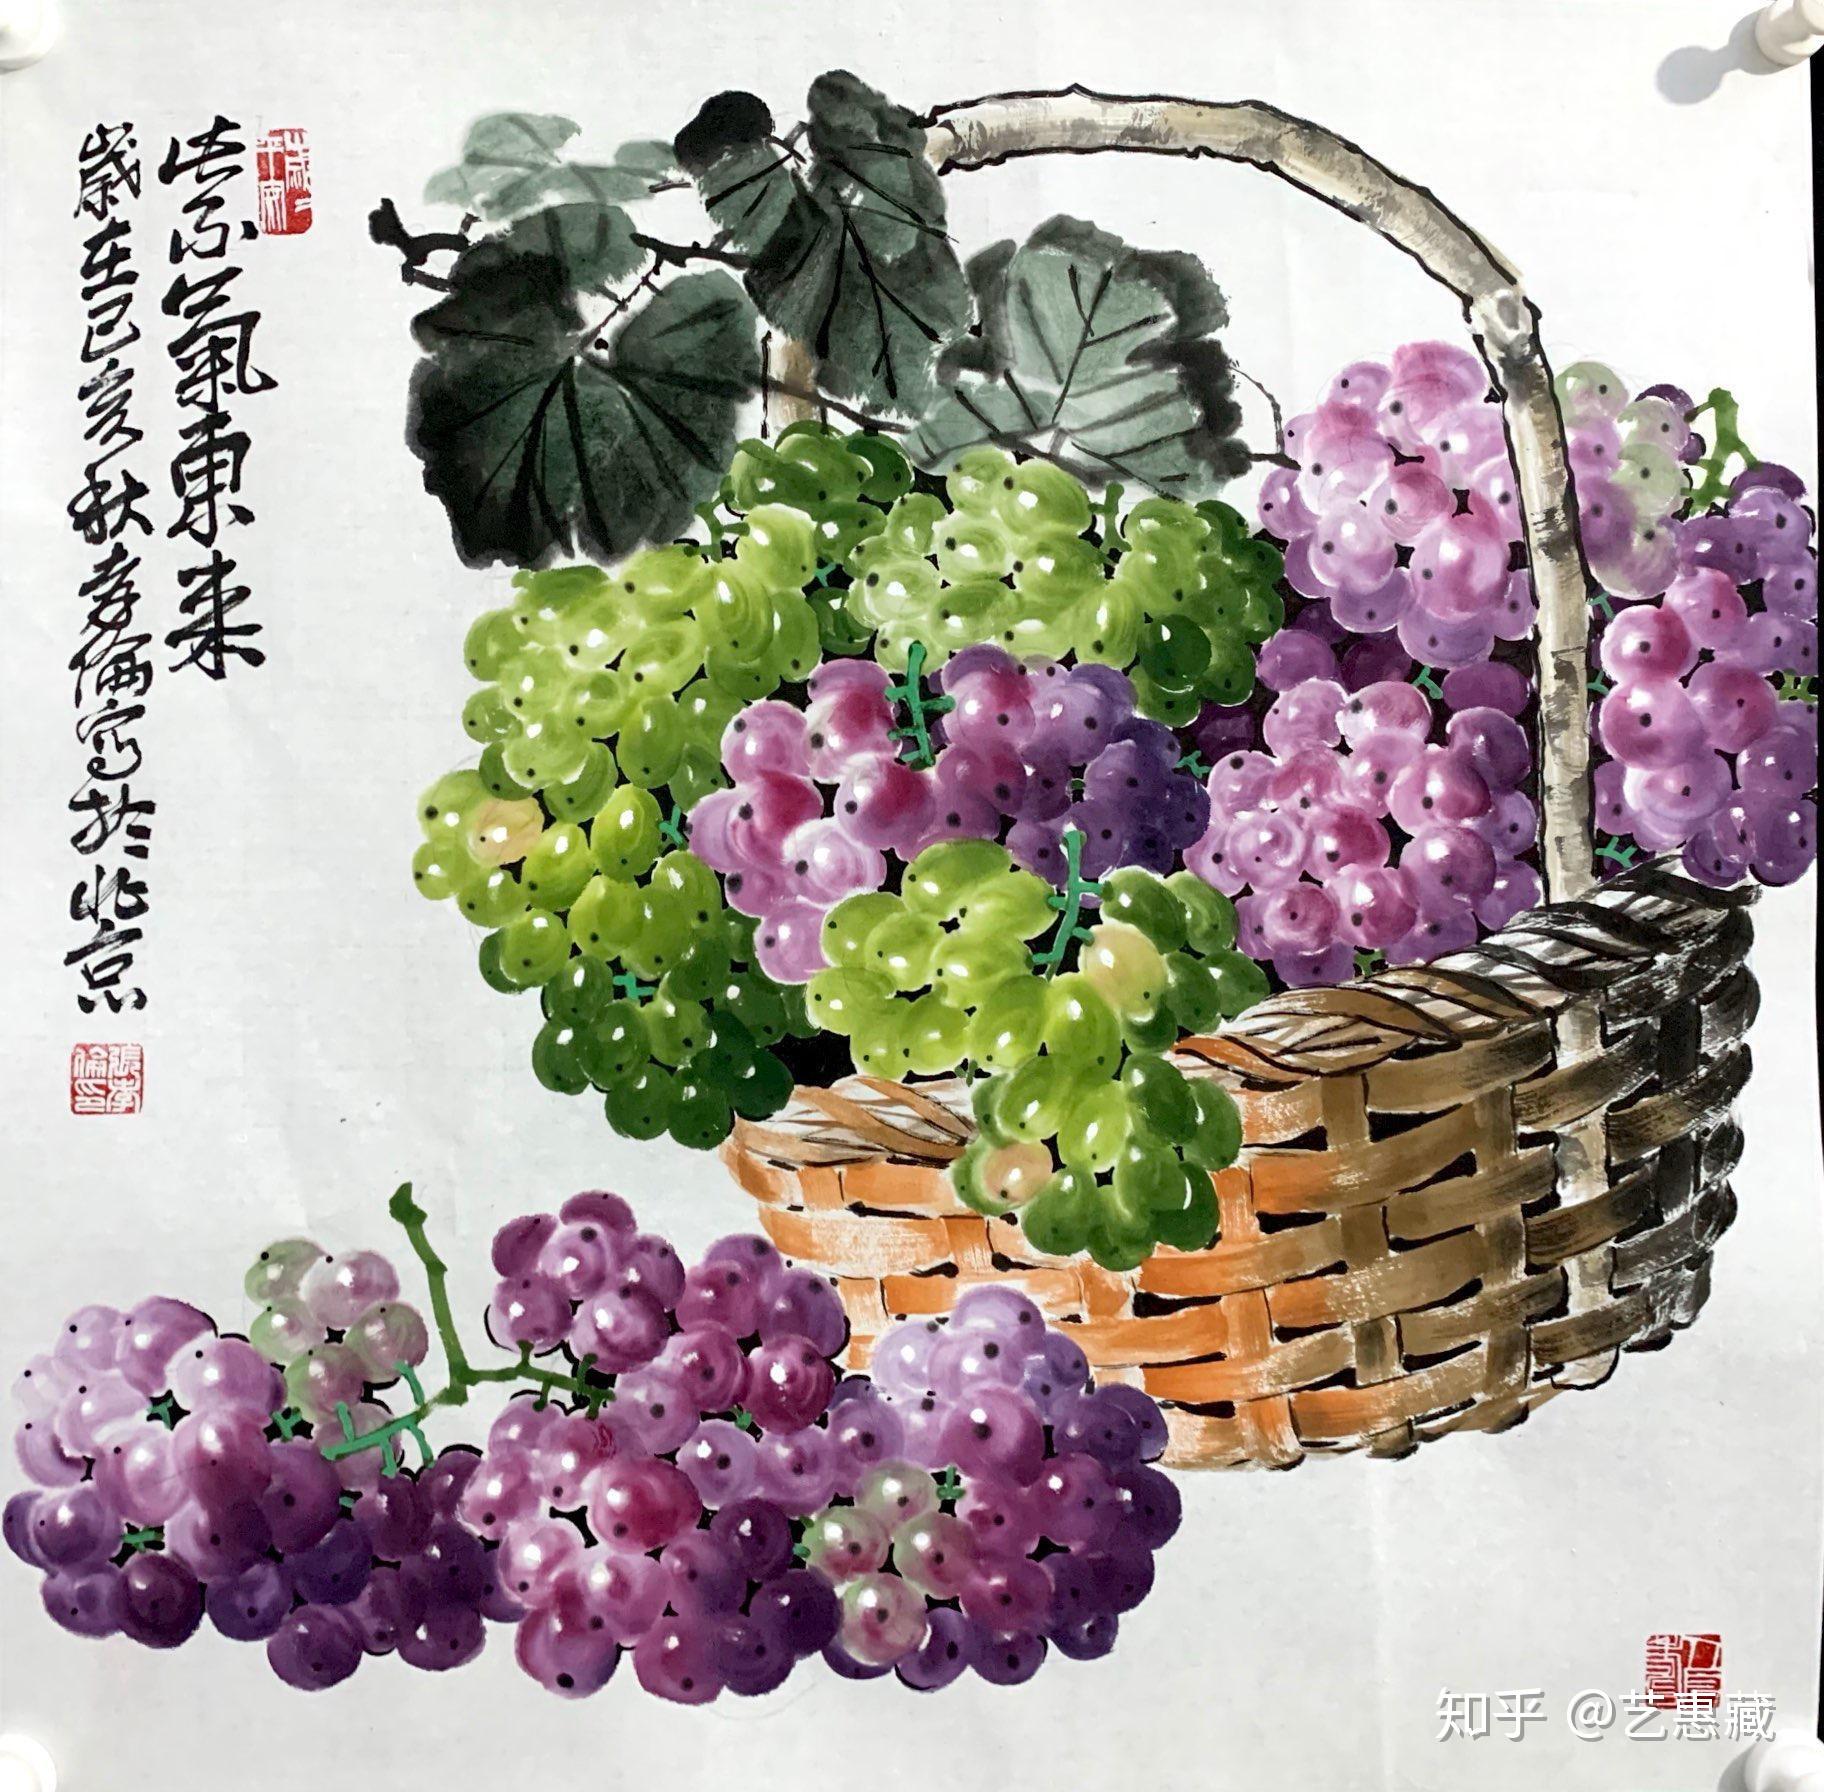 李贤松-国画葡萄-国画葡萄的美好寓意